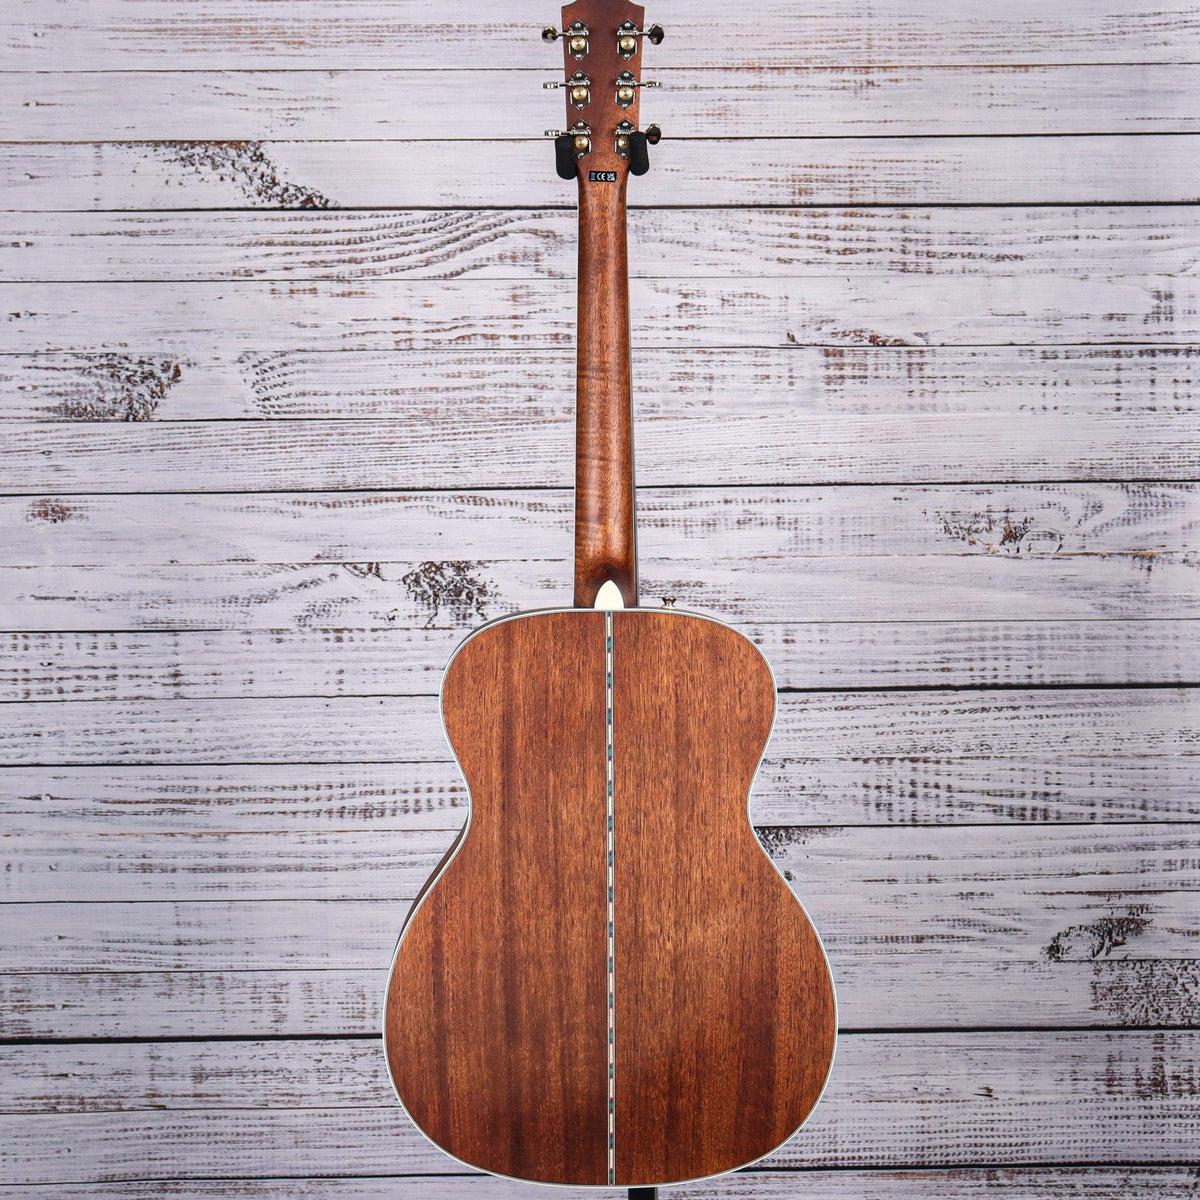 Fender Paramount Acoustic Guitar | Aged Cognac Burst | PO-220E